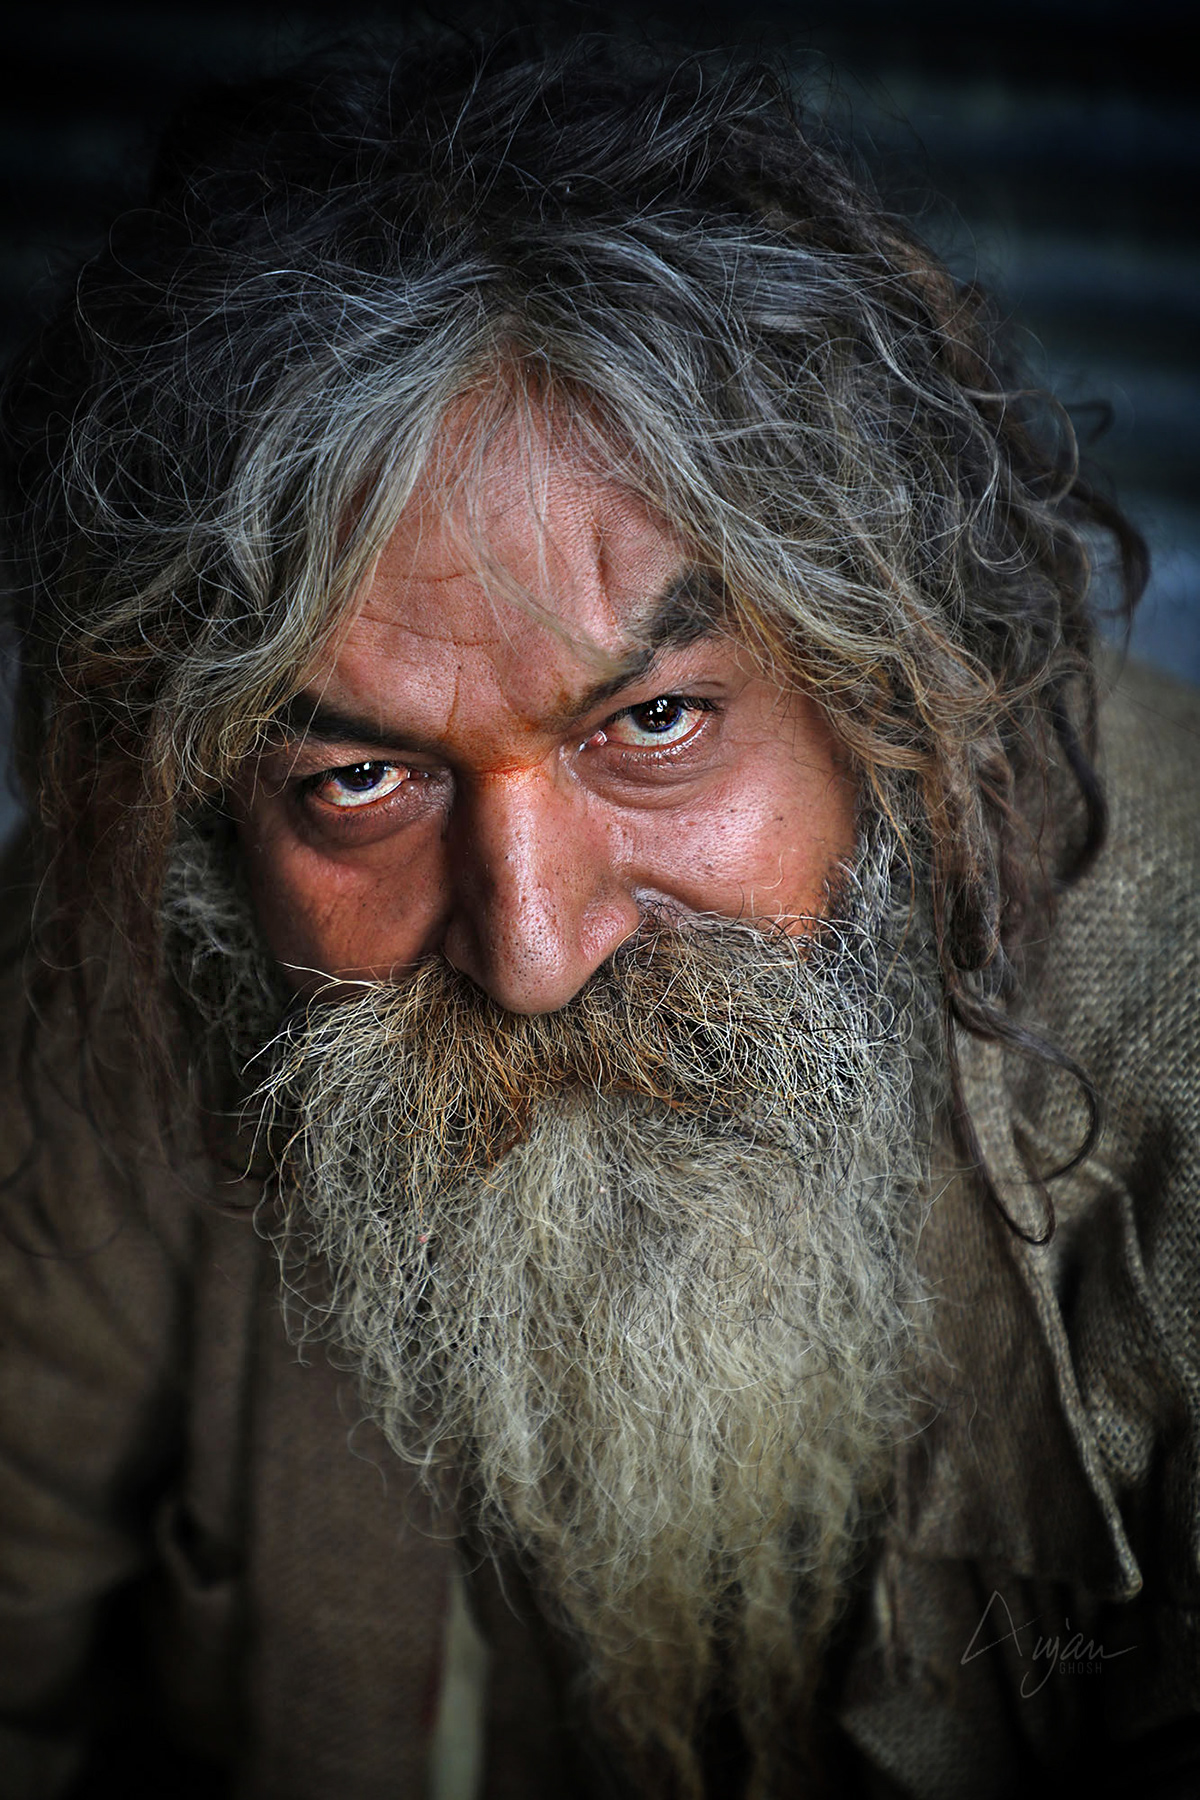 colour faces India life photographer Photography  portrait